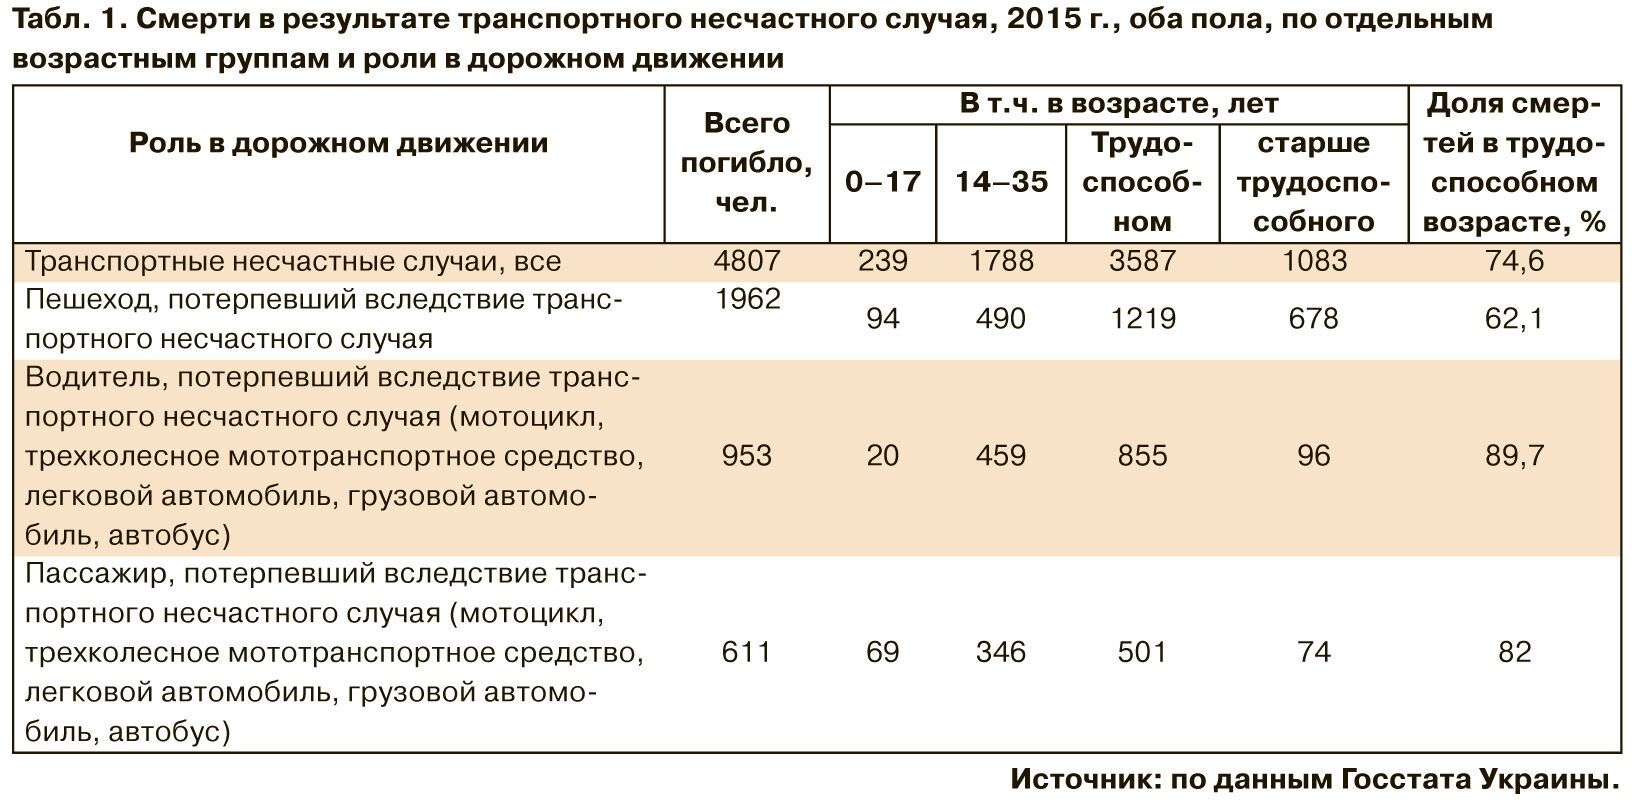 ДТП в Україні: озвучена страшна статистика щодо смертей. інфографіка